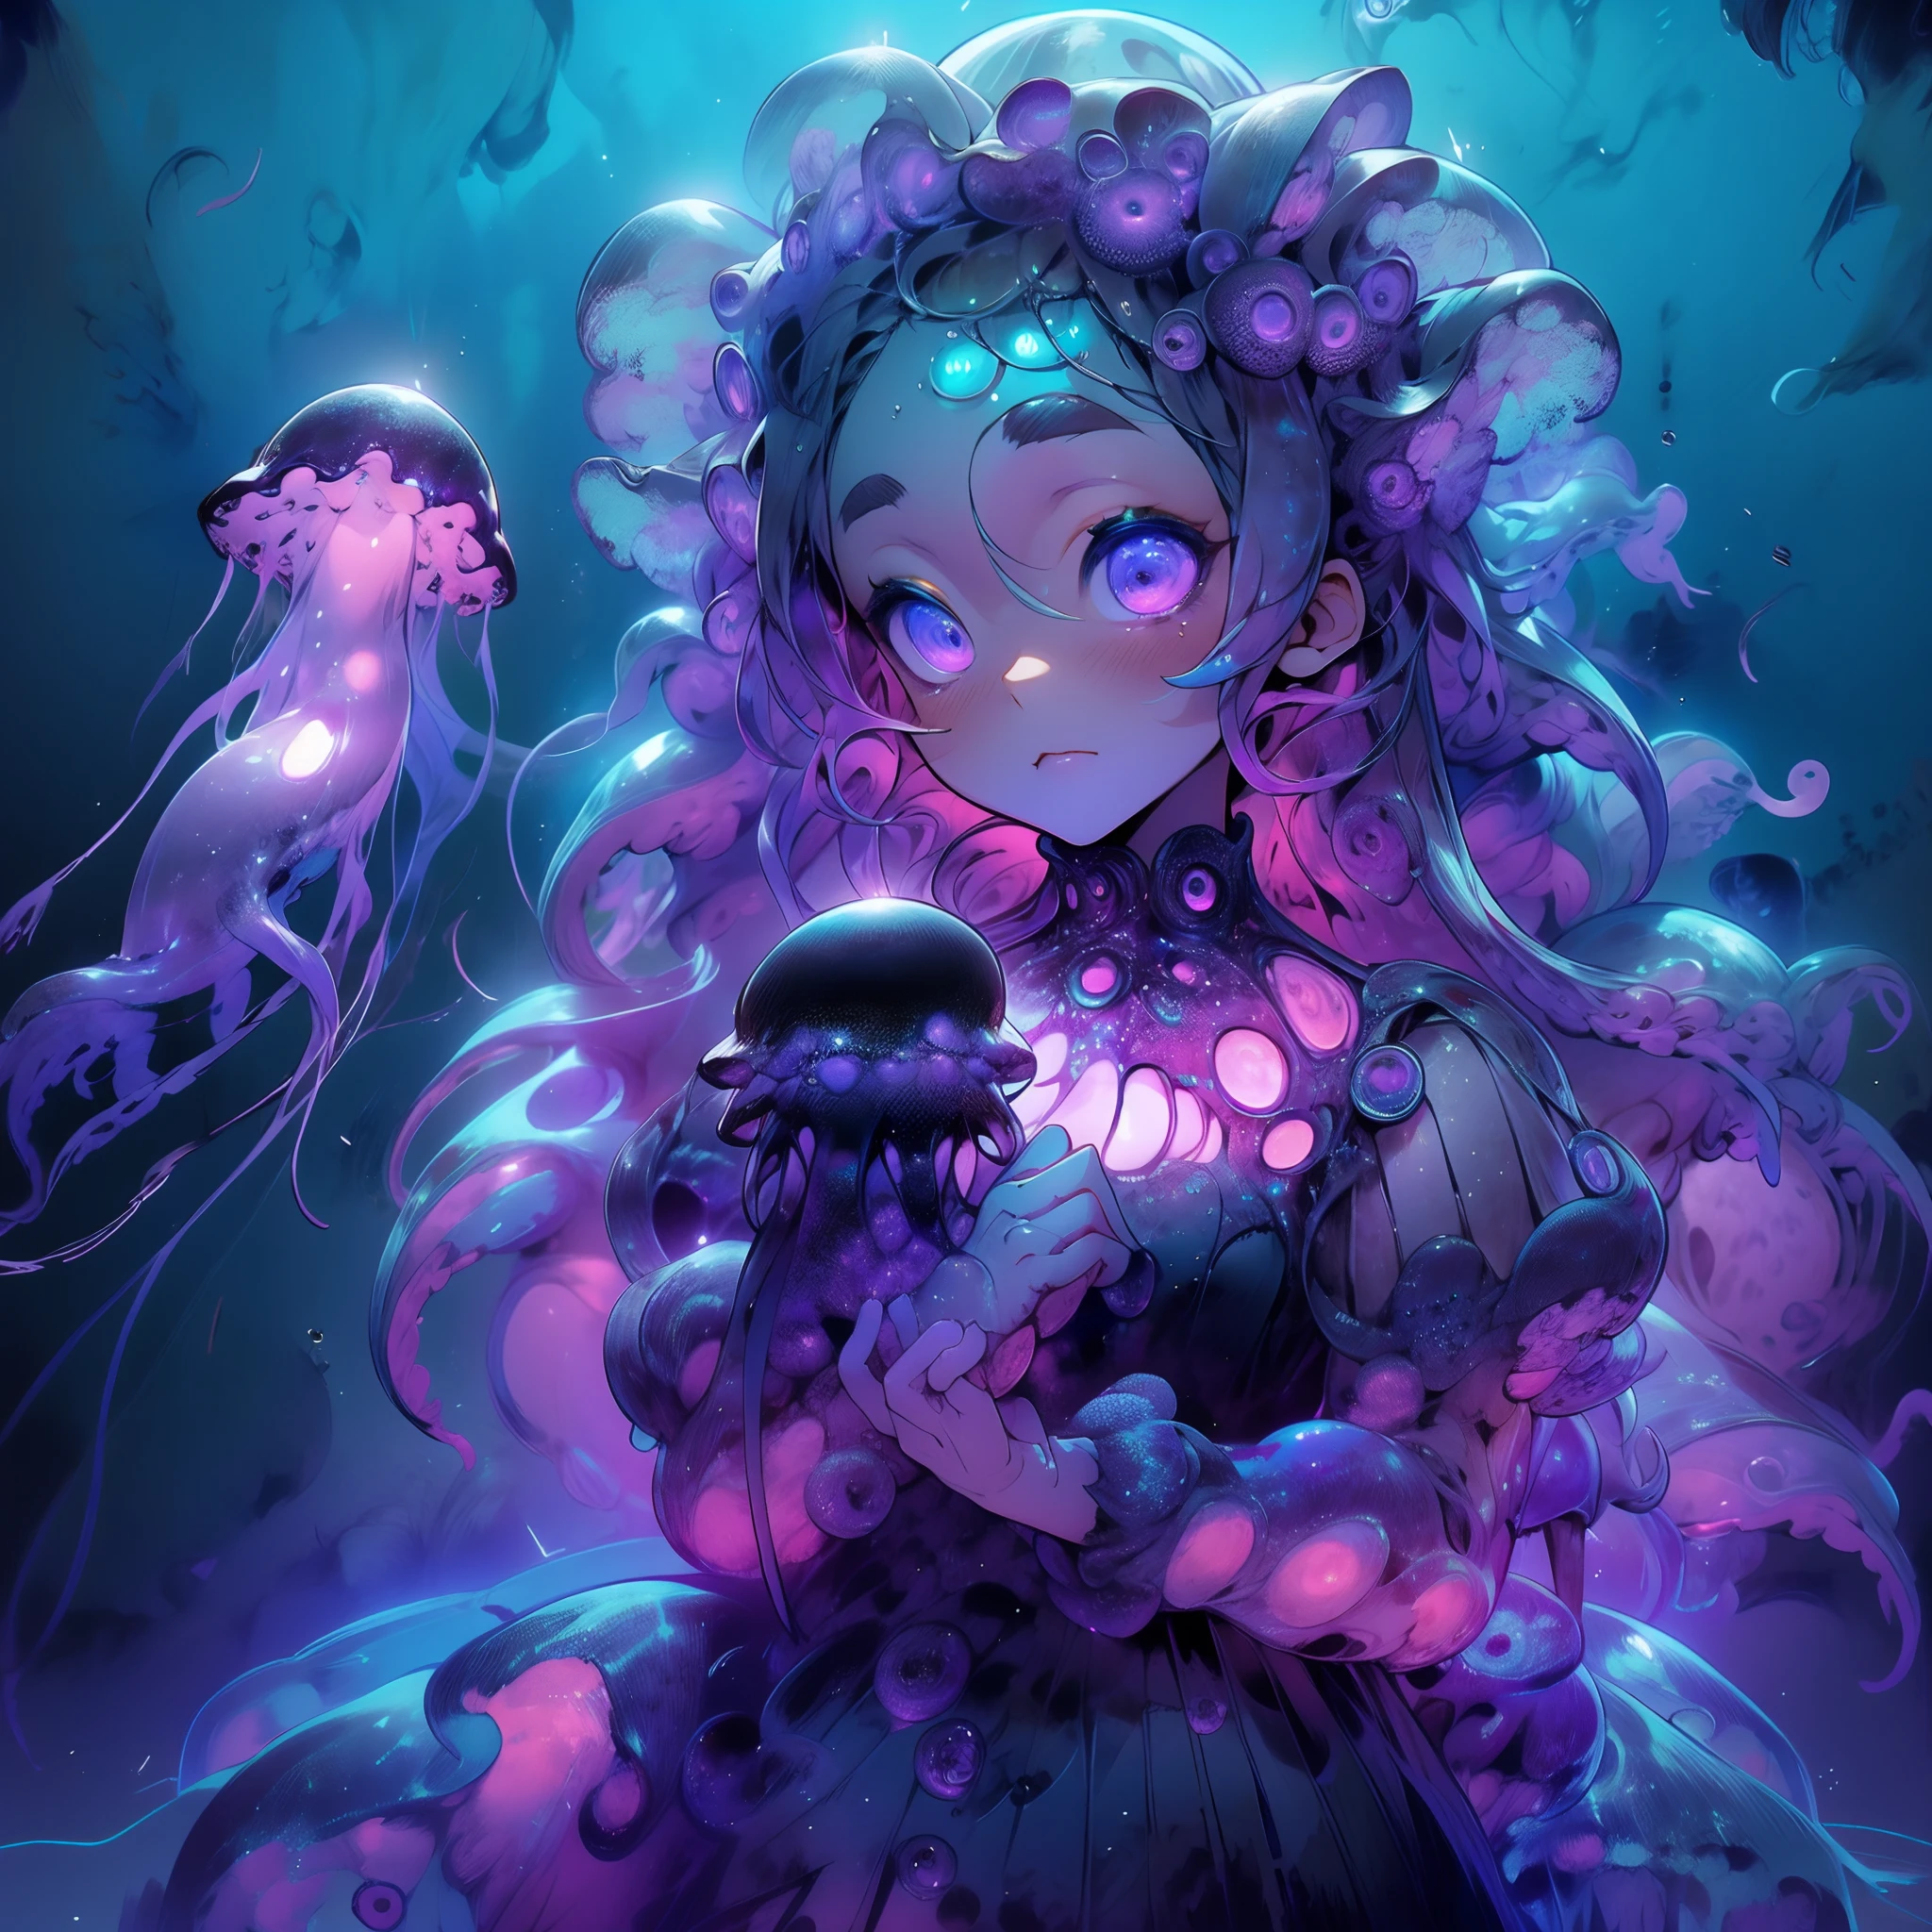 クラゲのドレスを着た女の子. 黒いクラゲと紫色の輝き. 紫色の発光体に並ぶ黒い触手. 深海.